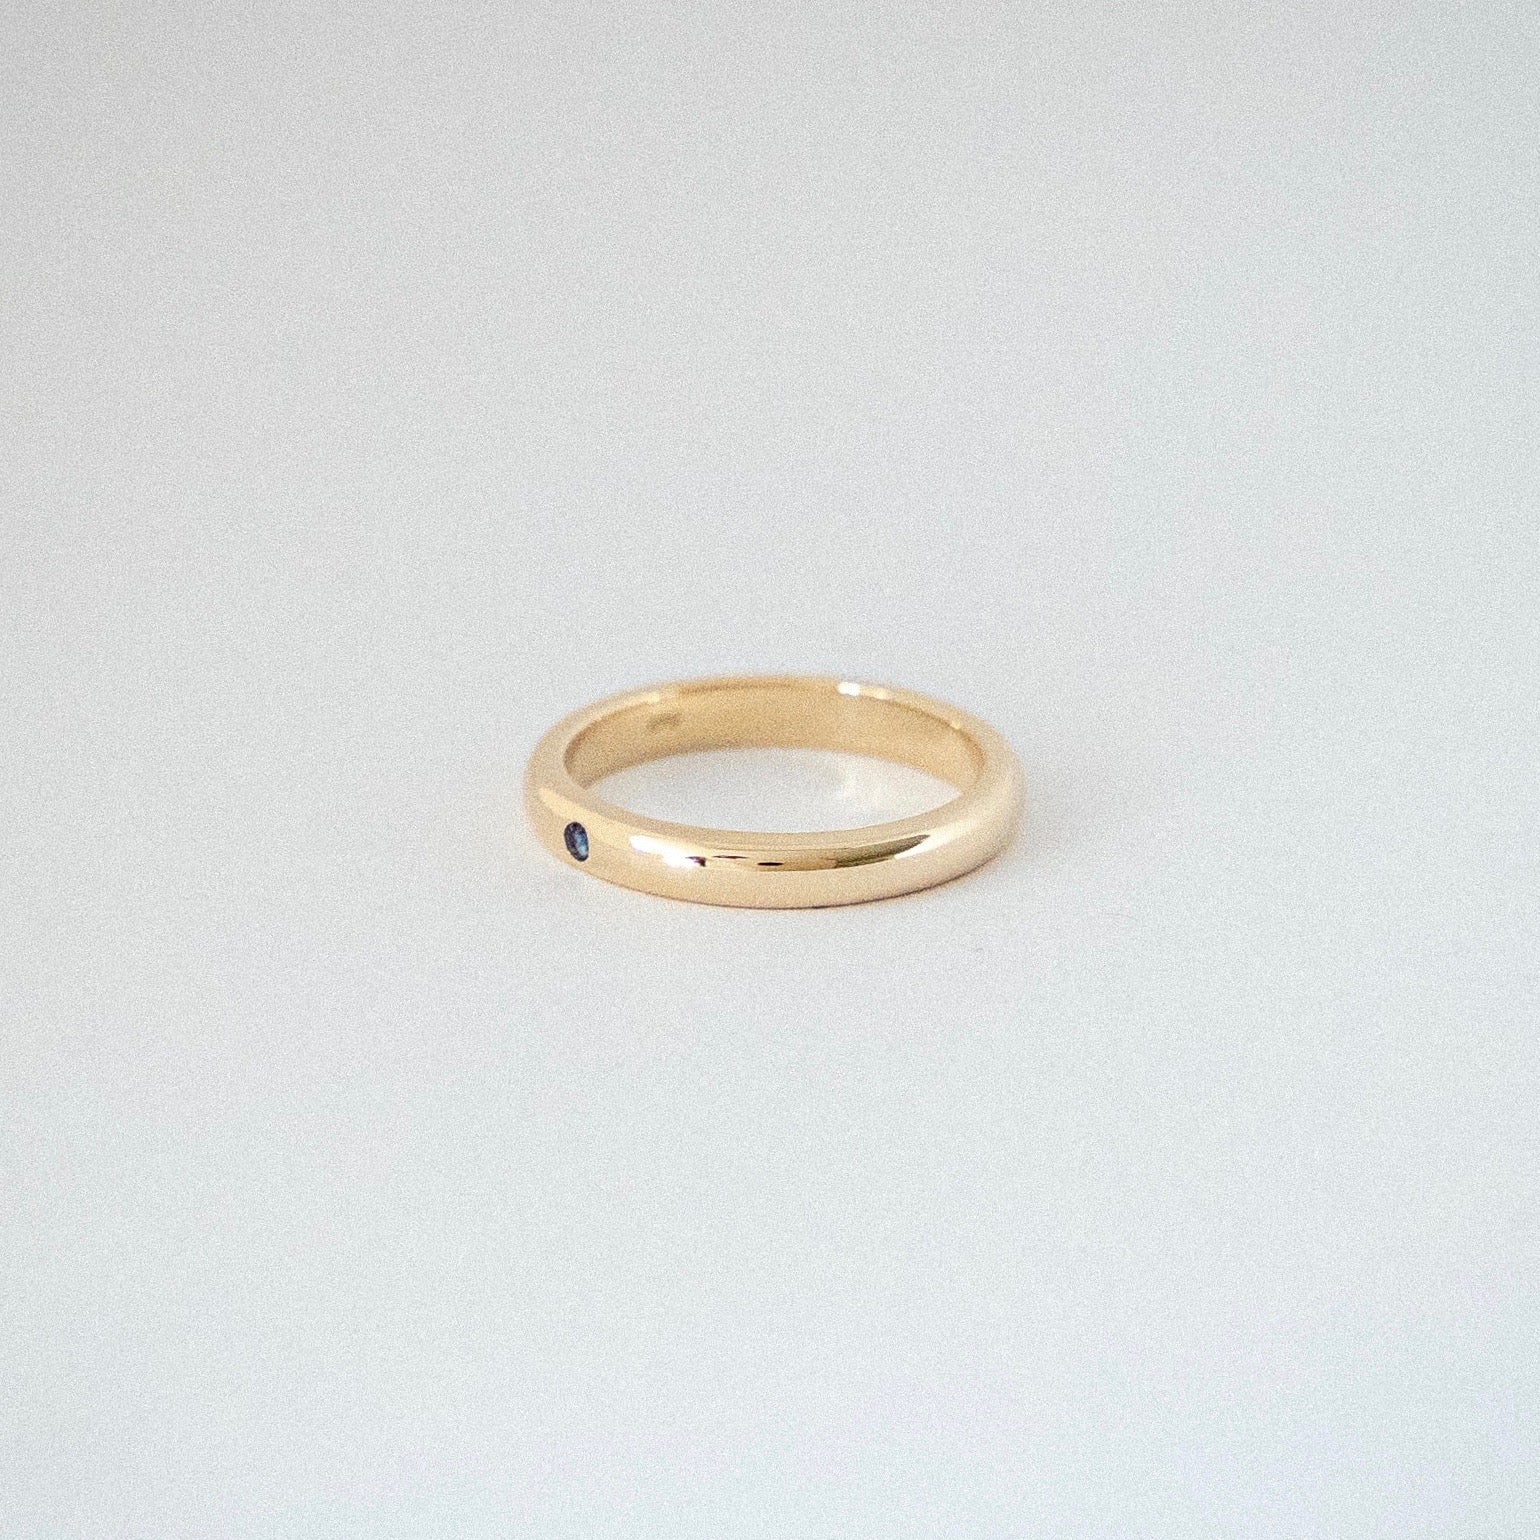 nimbus ring with gem